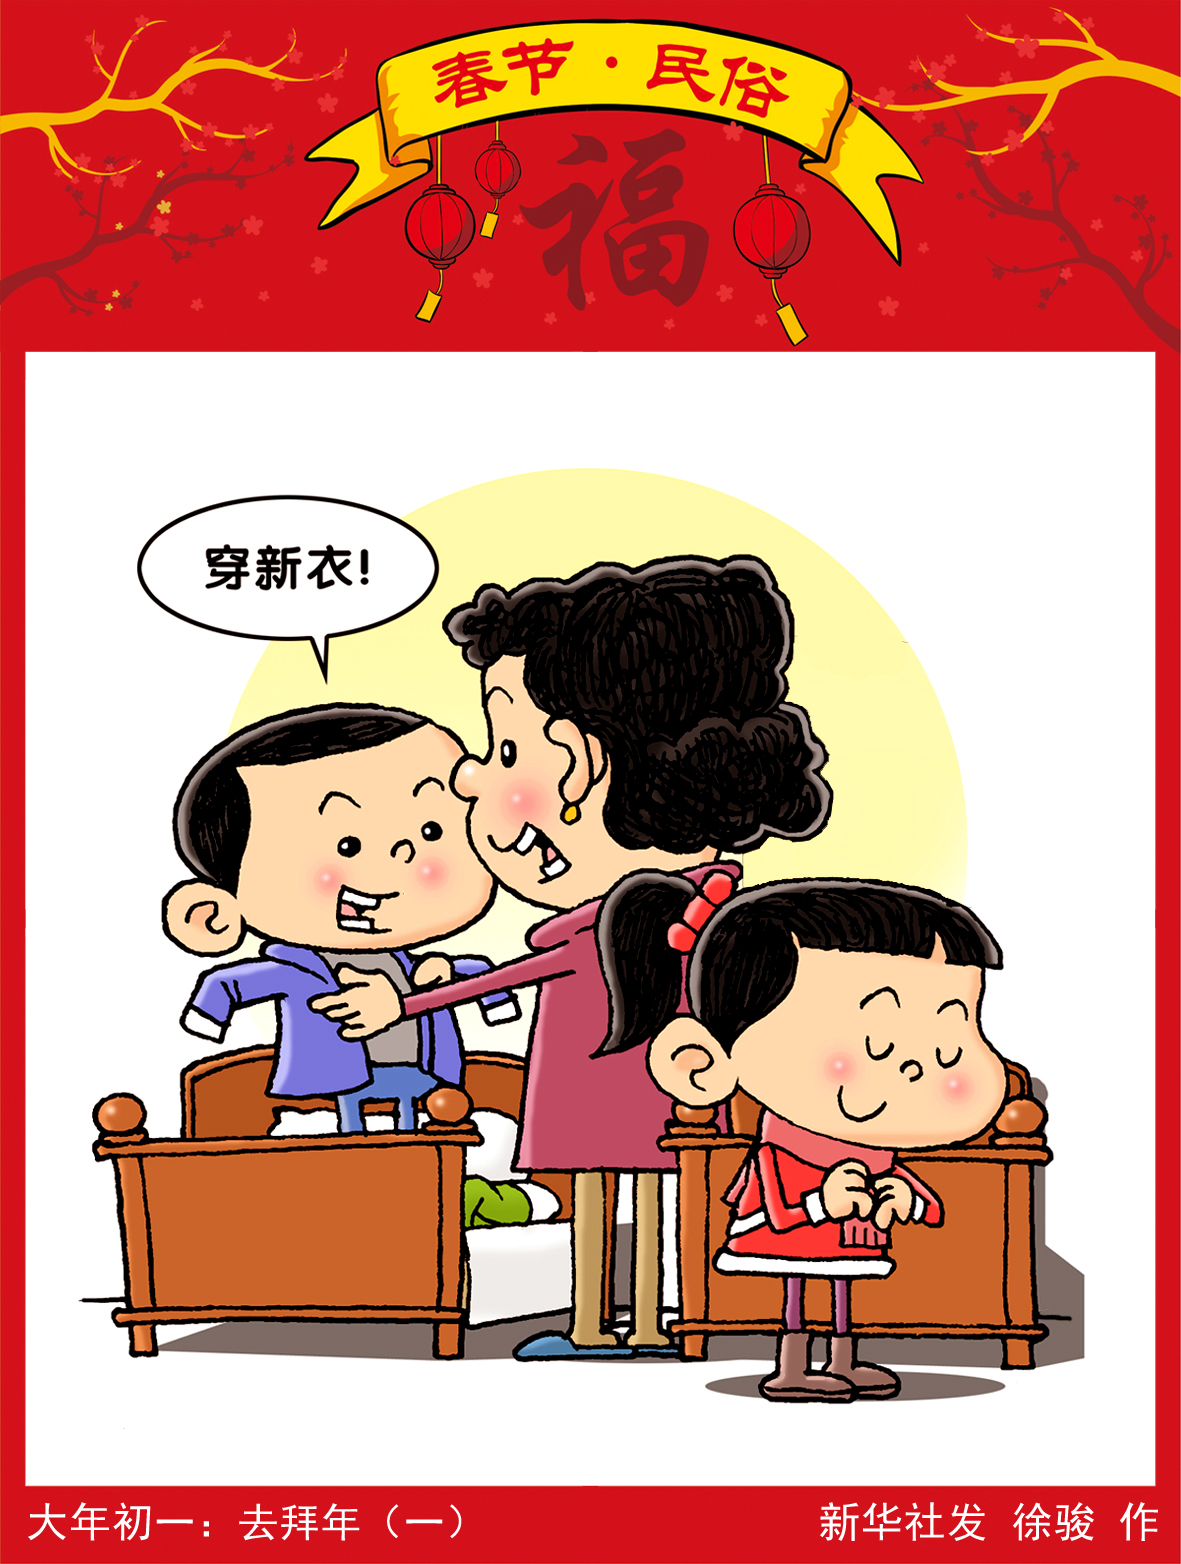 新华社图表,北京,2019年2月4日 漫画:大年初一:去拜年(一 新华社发